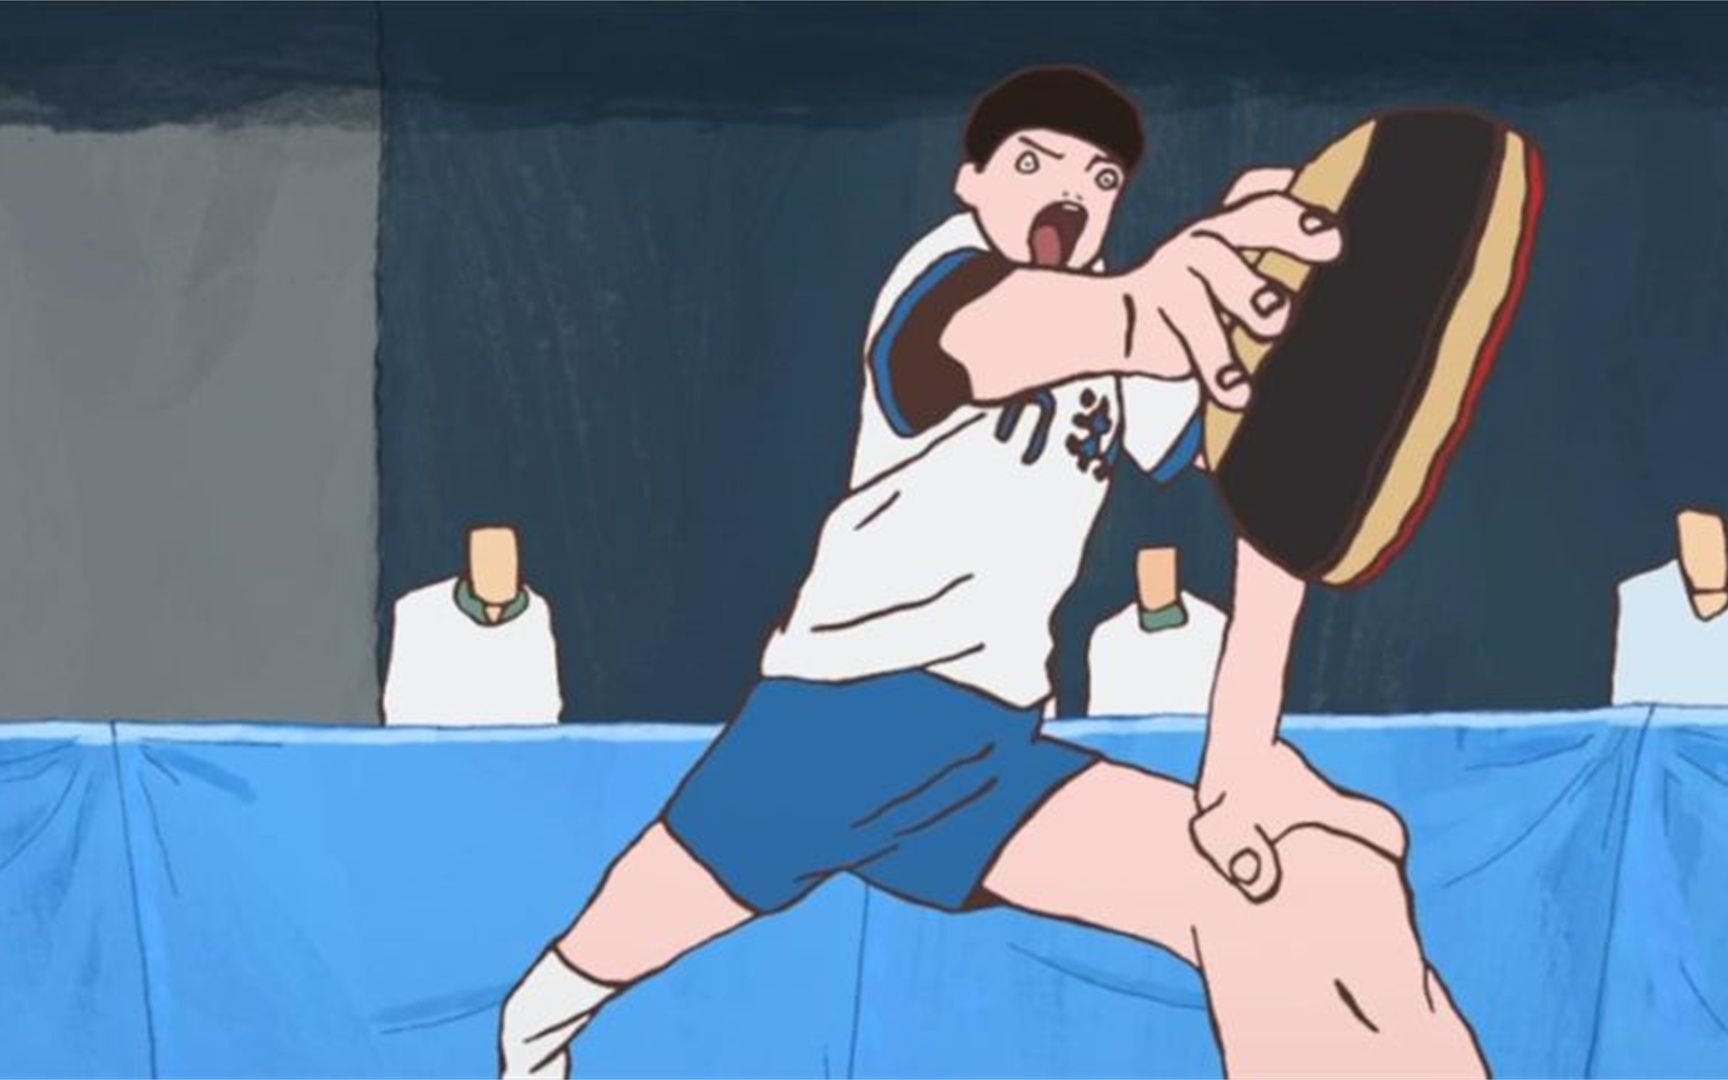 动画:绝对是最好看的乒乓球动画,日本乒乓神童,叫嚣中国冠军!